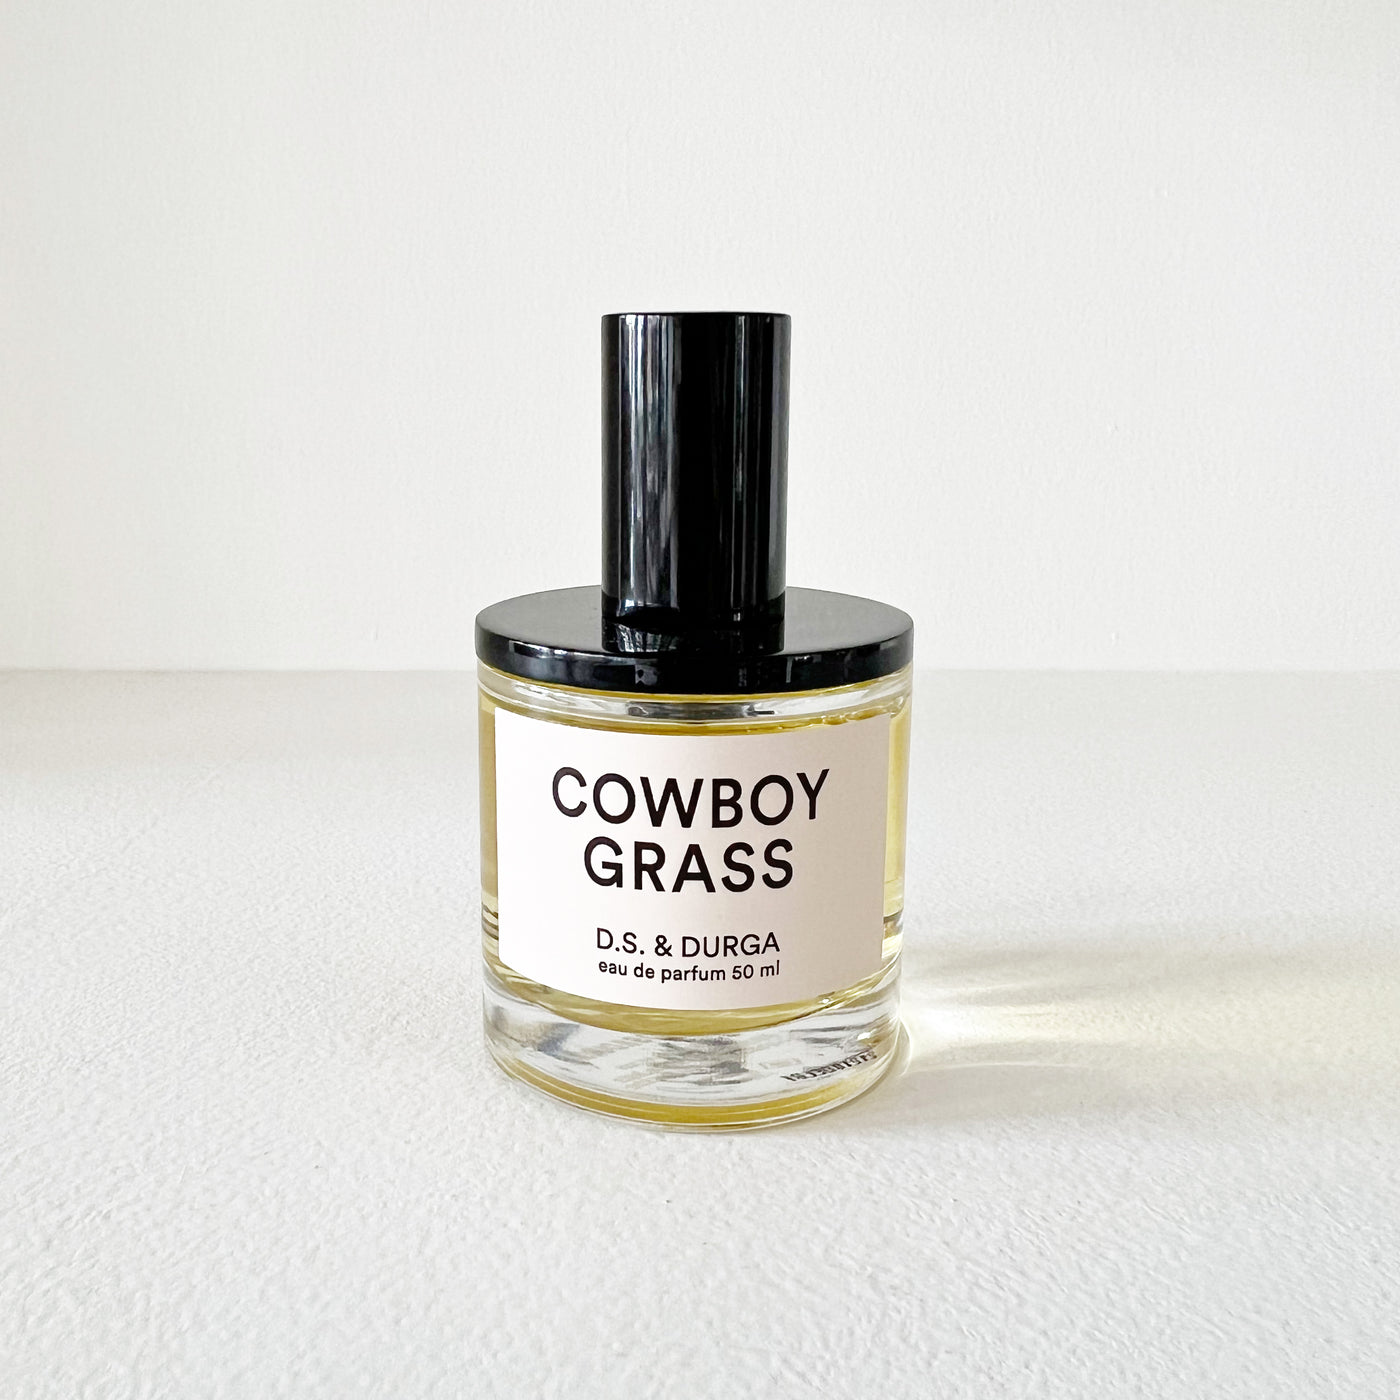 Cowboy Grass Perfume by D.S. & Durga